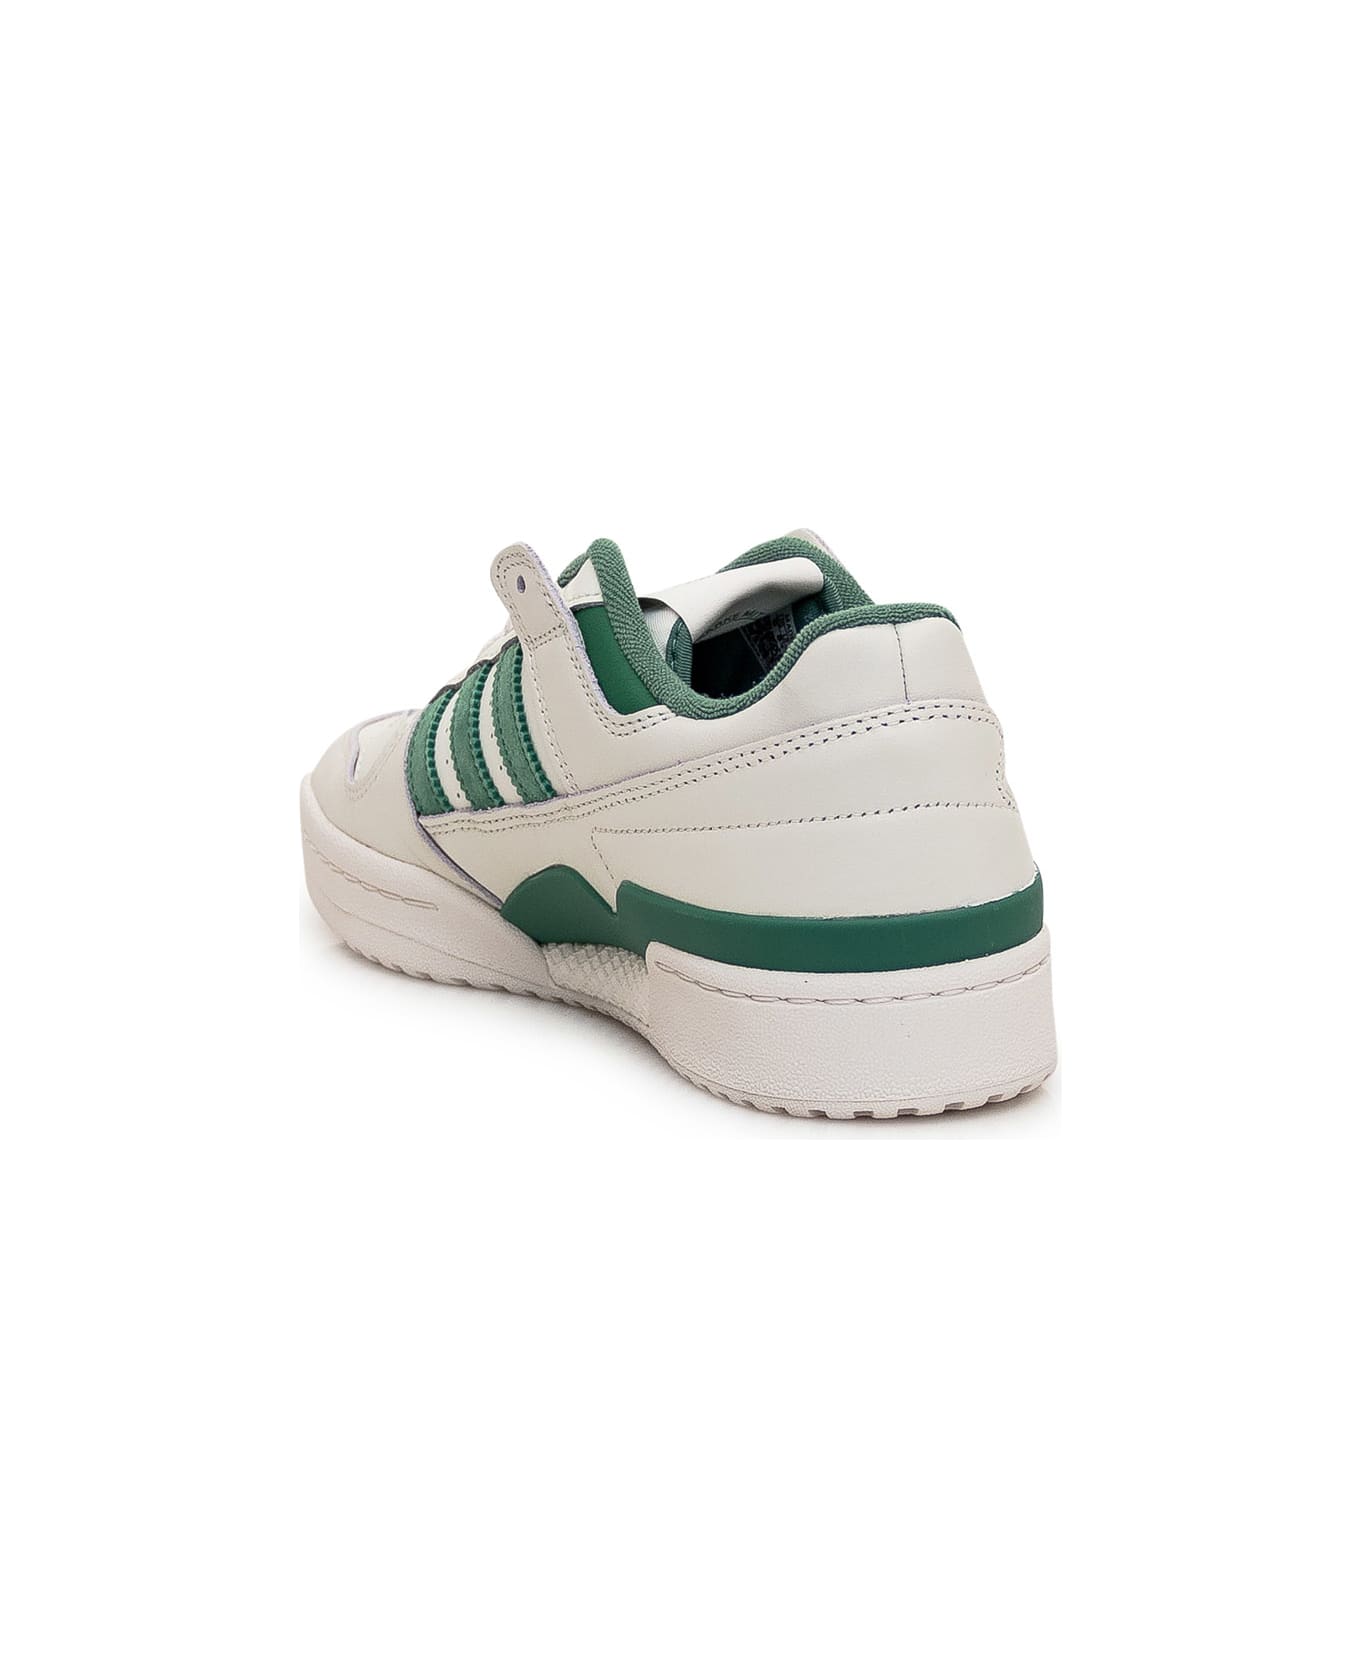 Adidas Originals Forum Low Sneaker - CLOWHI/PRLOGR/CLOWHI スニーカー